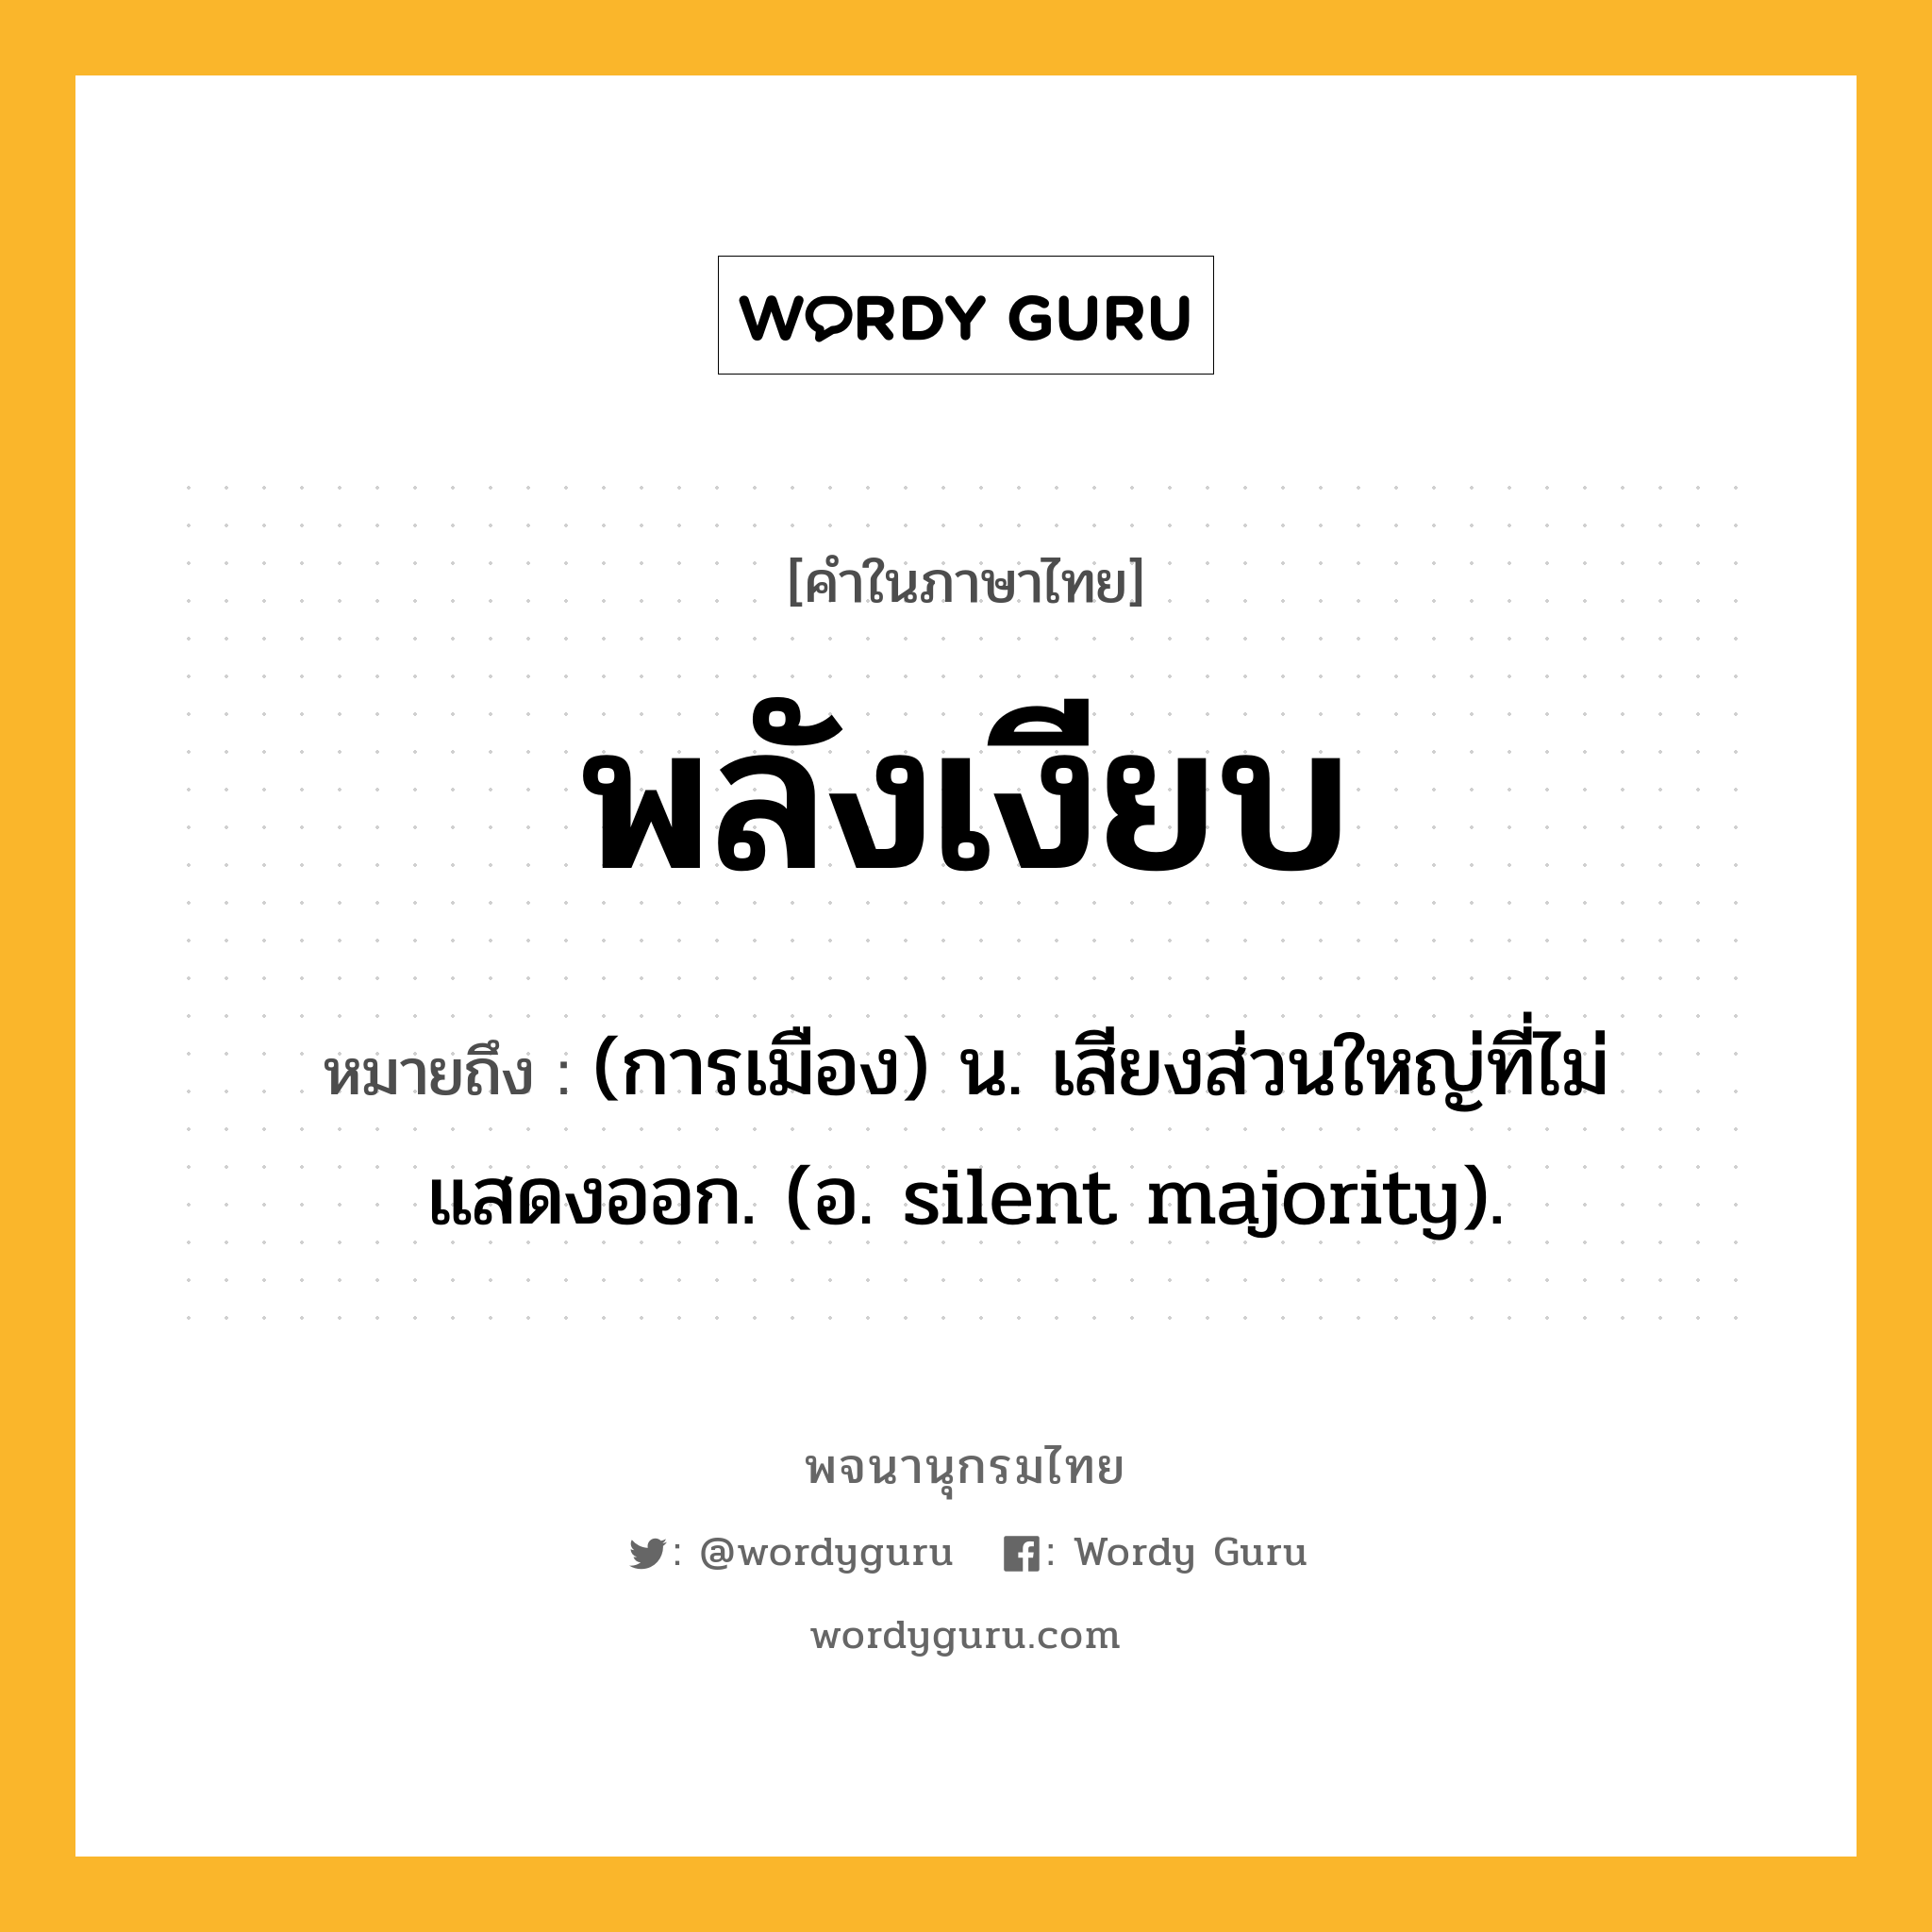 พลังเงียบ ความหมาย หมายถึงอะไร?, คำในภาษาไทย พลังเงียบ หมายถึง (การเมือง) น. เสียงส่วนใหญ่ที่ไม่แสดงออก. (อ. silent majority).